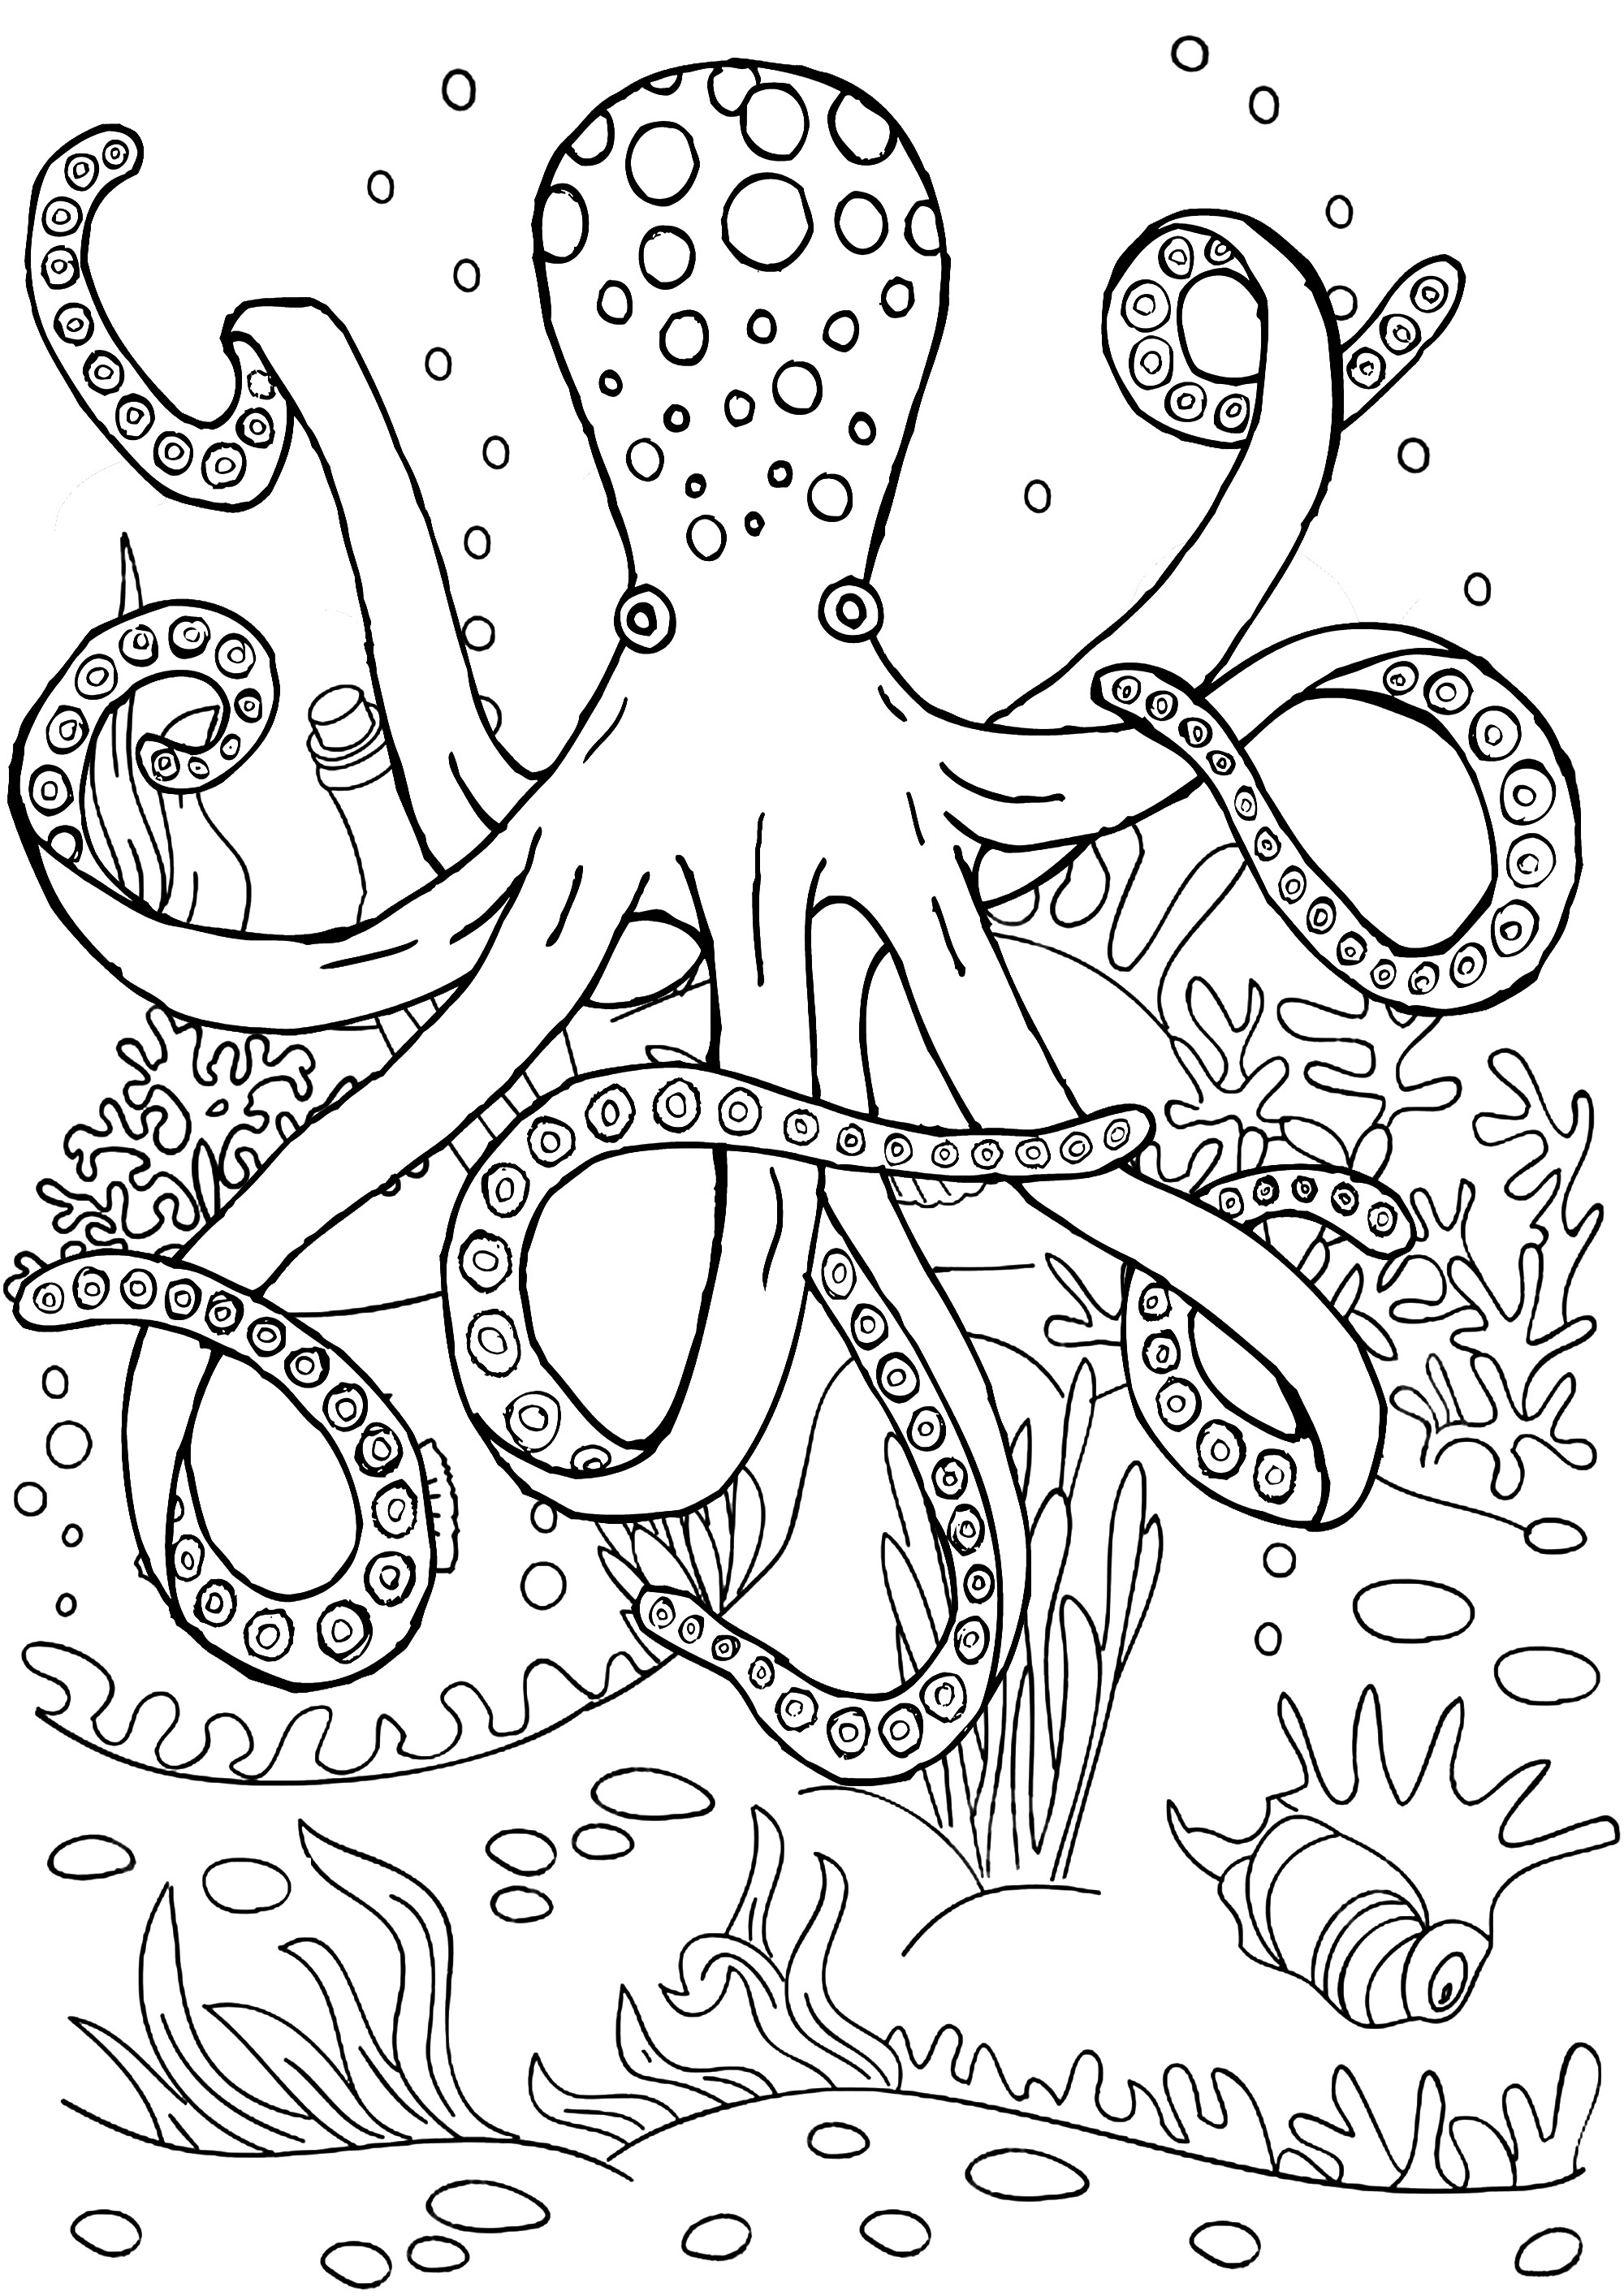 Jolie pieuvre des fonds marins. Colorez cette pieuvre et ses tentacules, ainsi que les fonds marins dans lesquels elle se trouve.